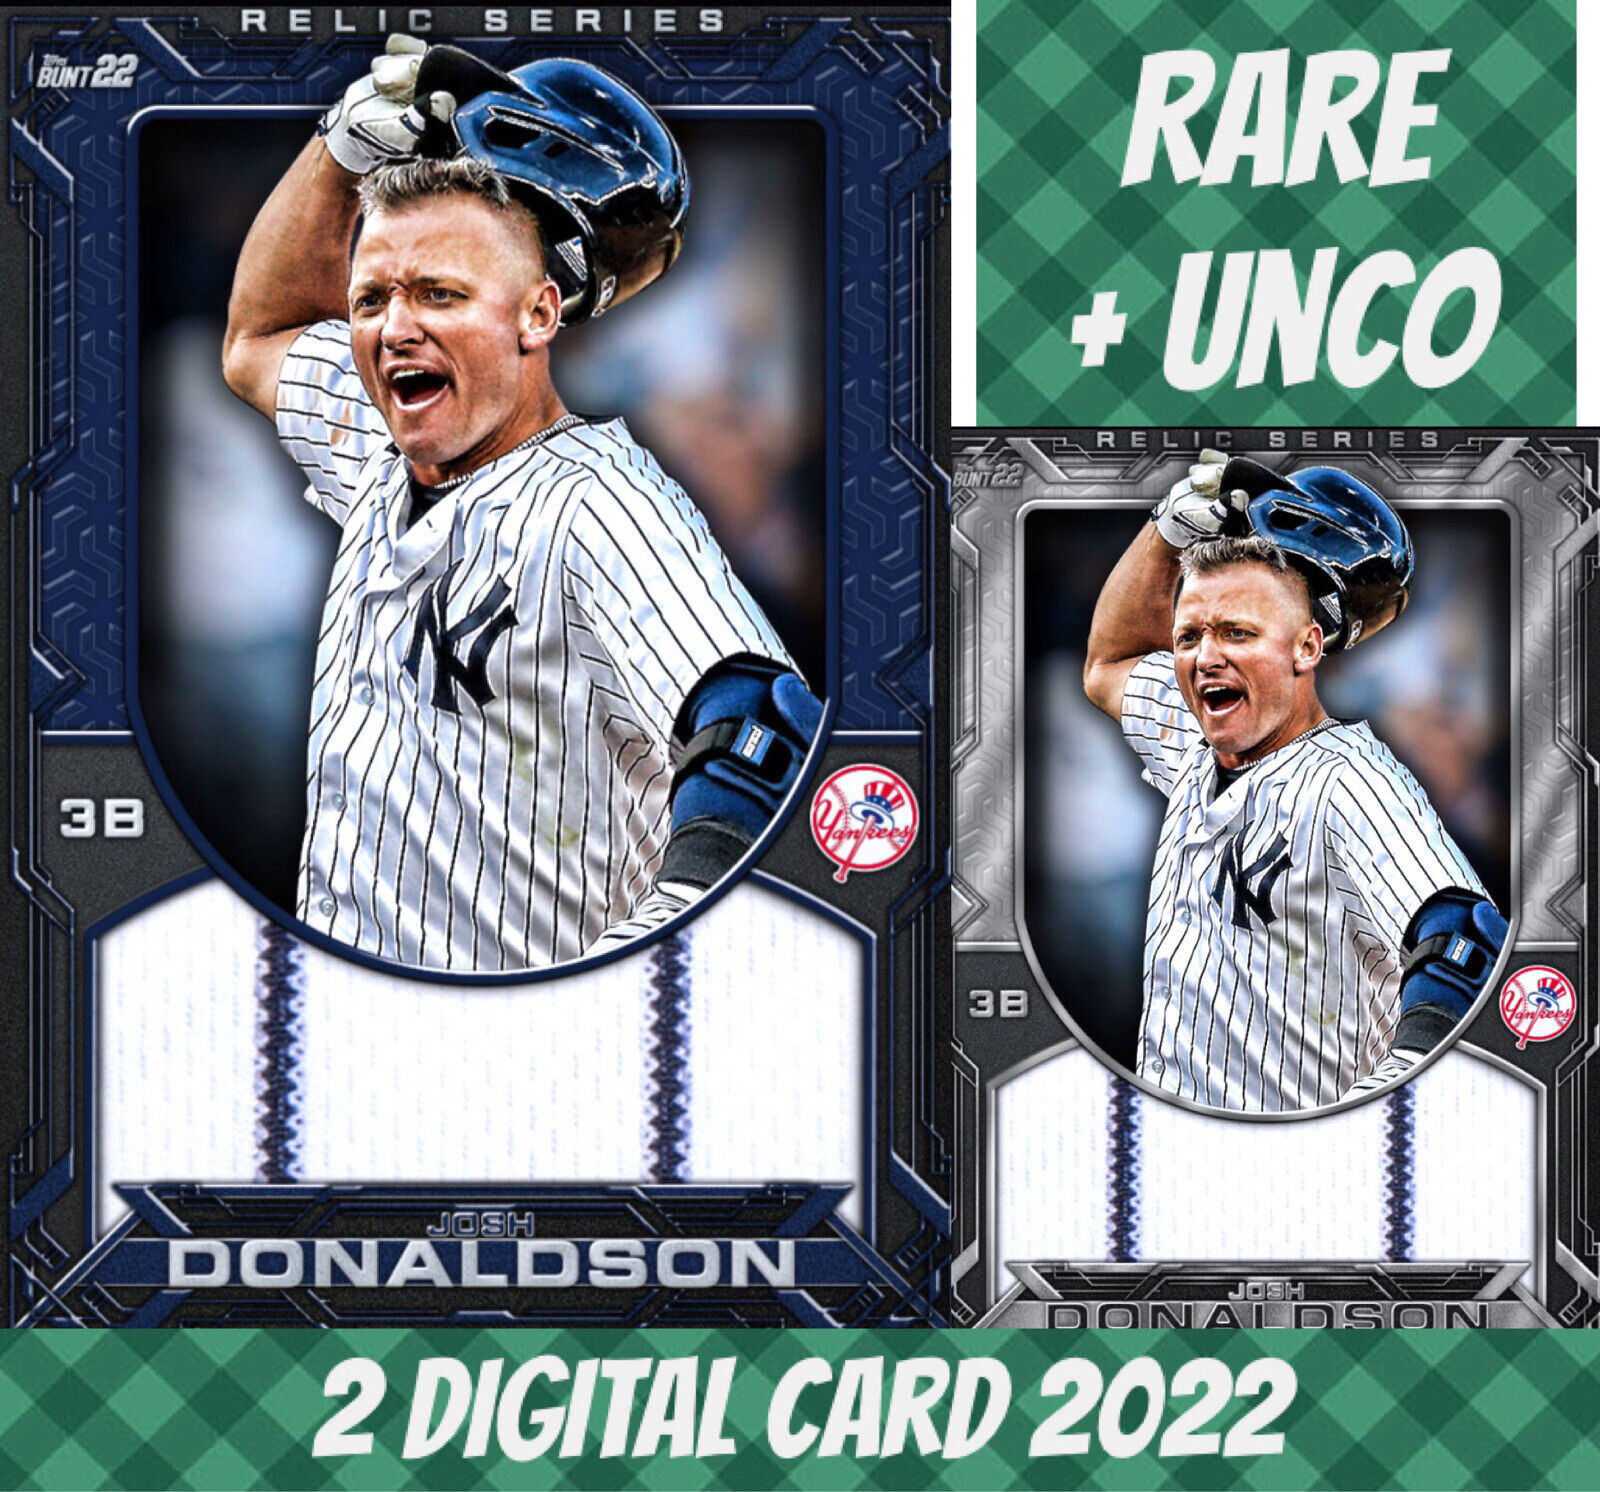 Topps Bunt 22 Josh Donaldson Rare Unco Relic Series S/2 2022 Digital Card